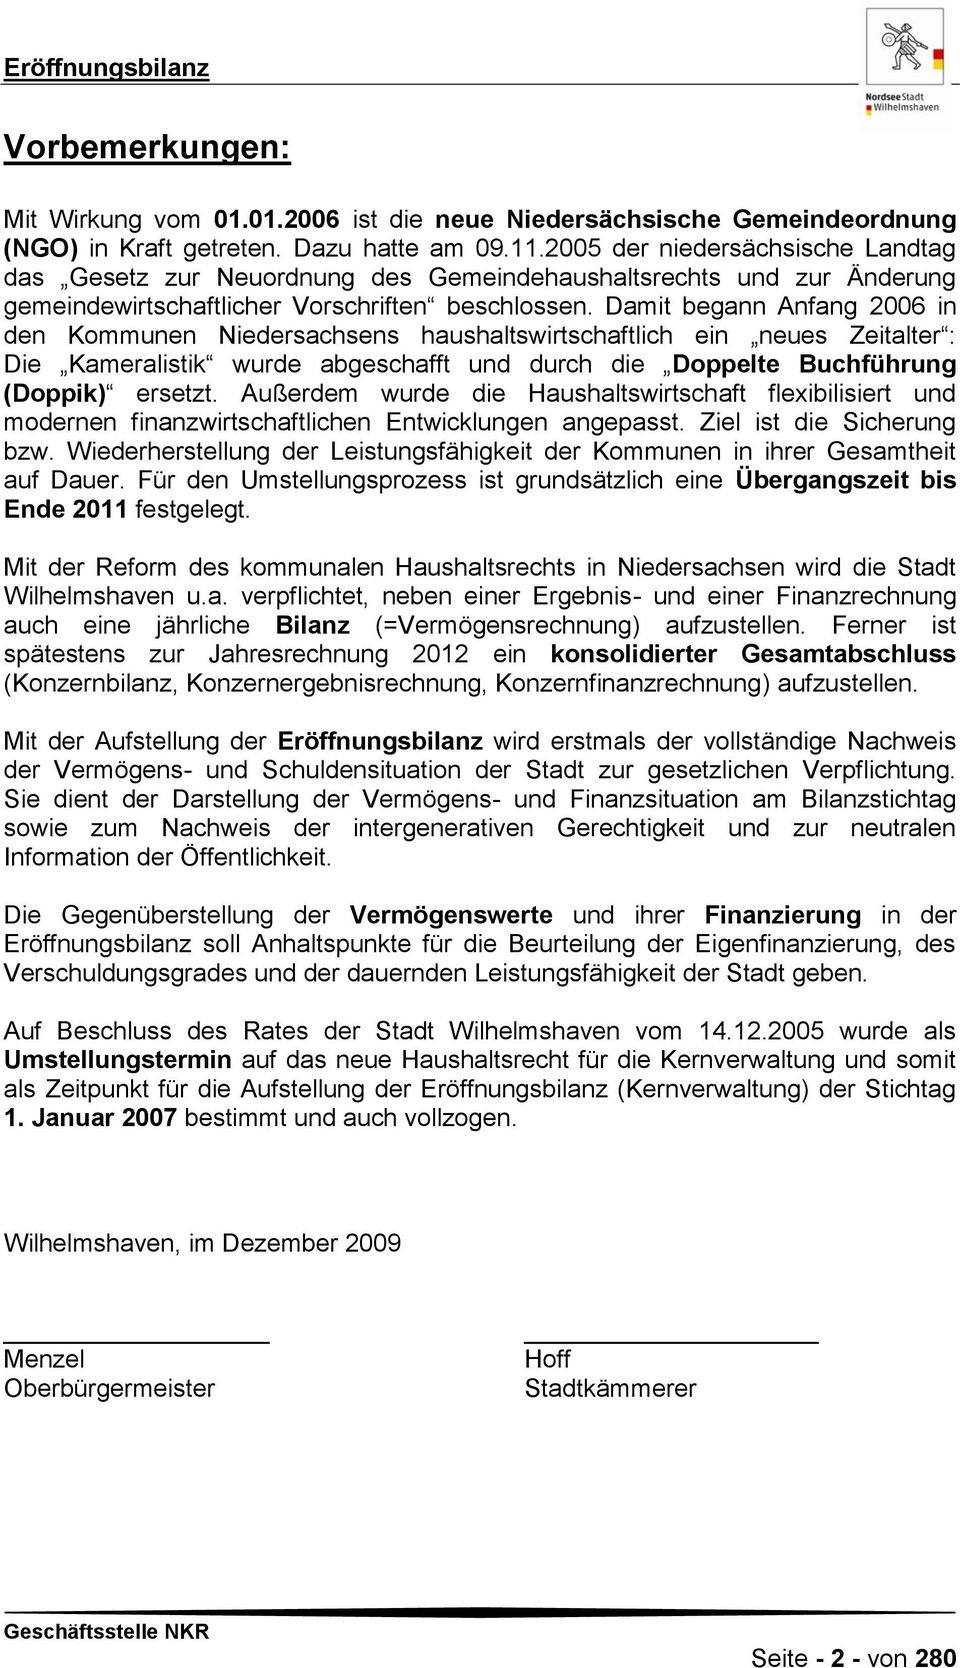 Damit begann Anfang 2006 in den Kommunen Niedersachsens haushaltswirtschaftlich ein neues Zeitalter : Die Kameralistik wurde abgeschafft und durch die Doppelte Buchführung (Doppik) ersetzt.